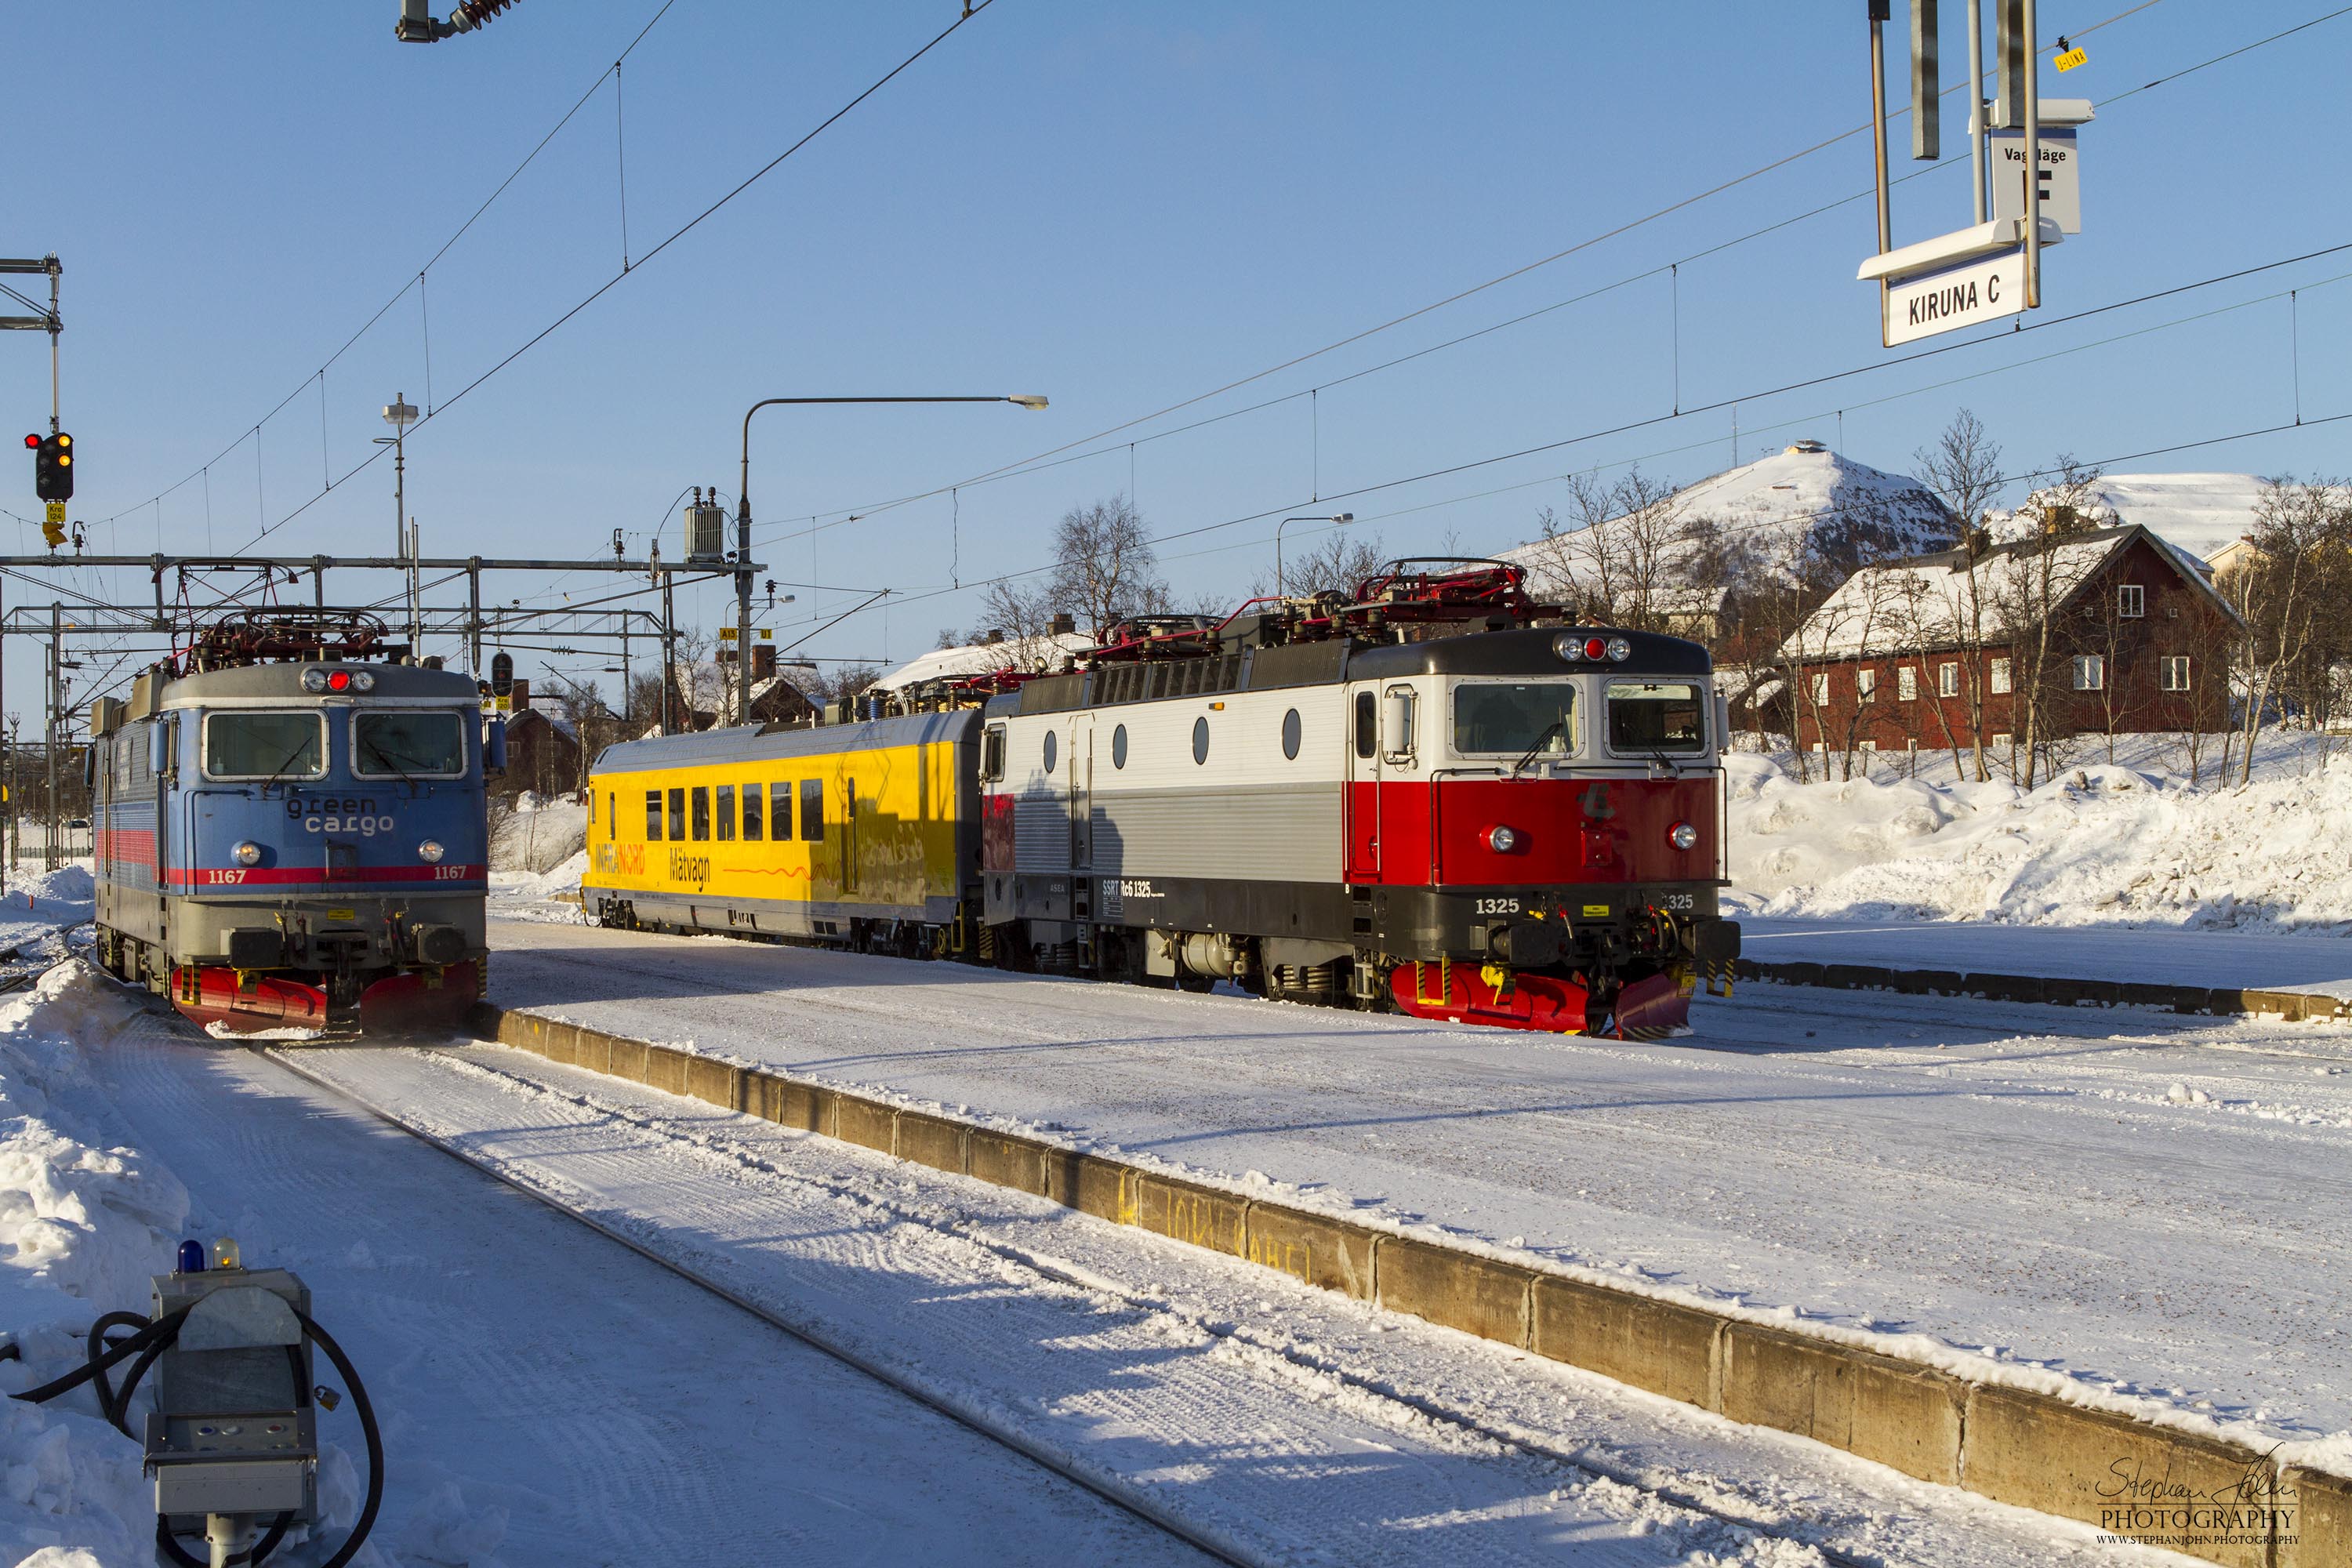 Messzug von InfraNord im Bahnhof Kiruna C